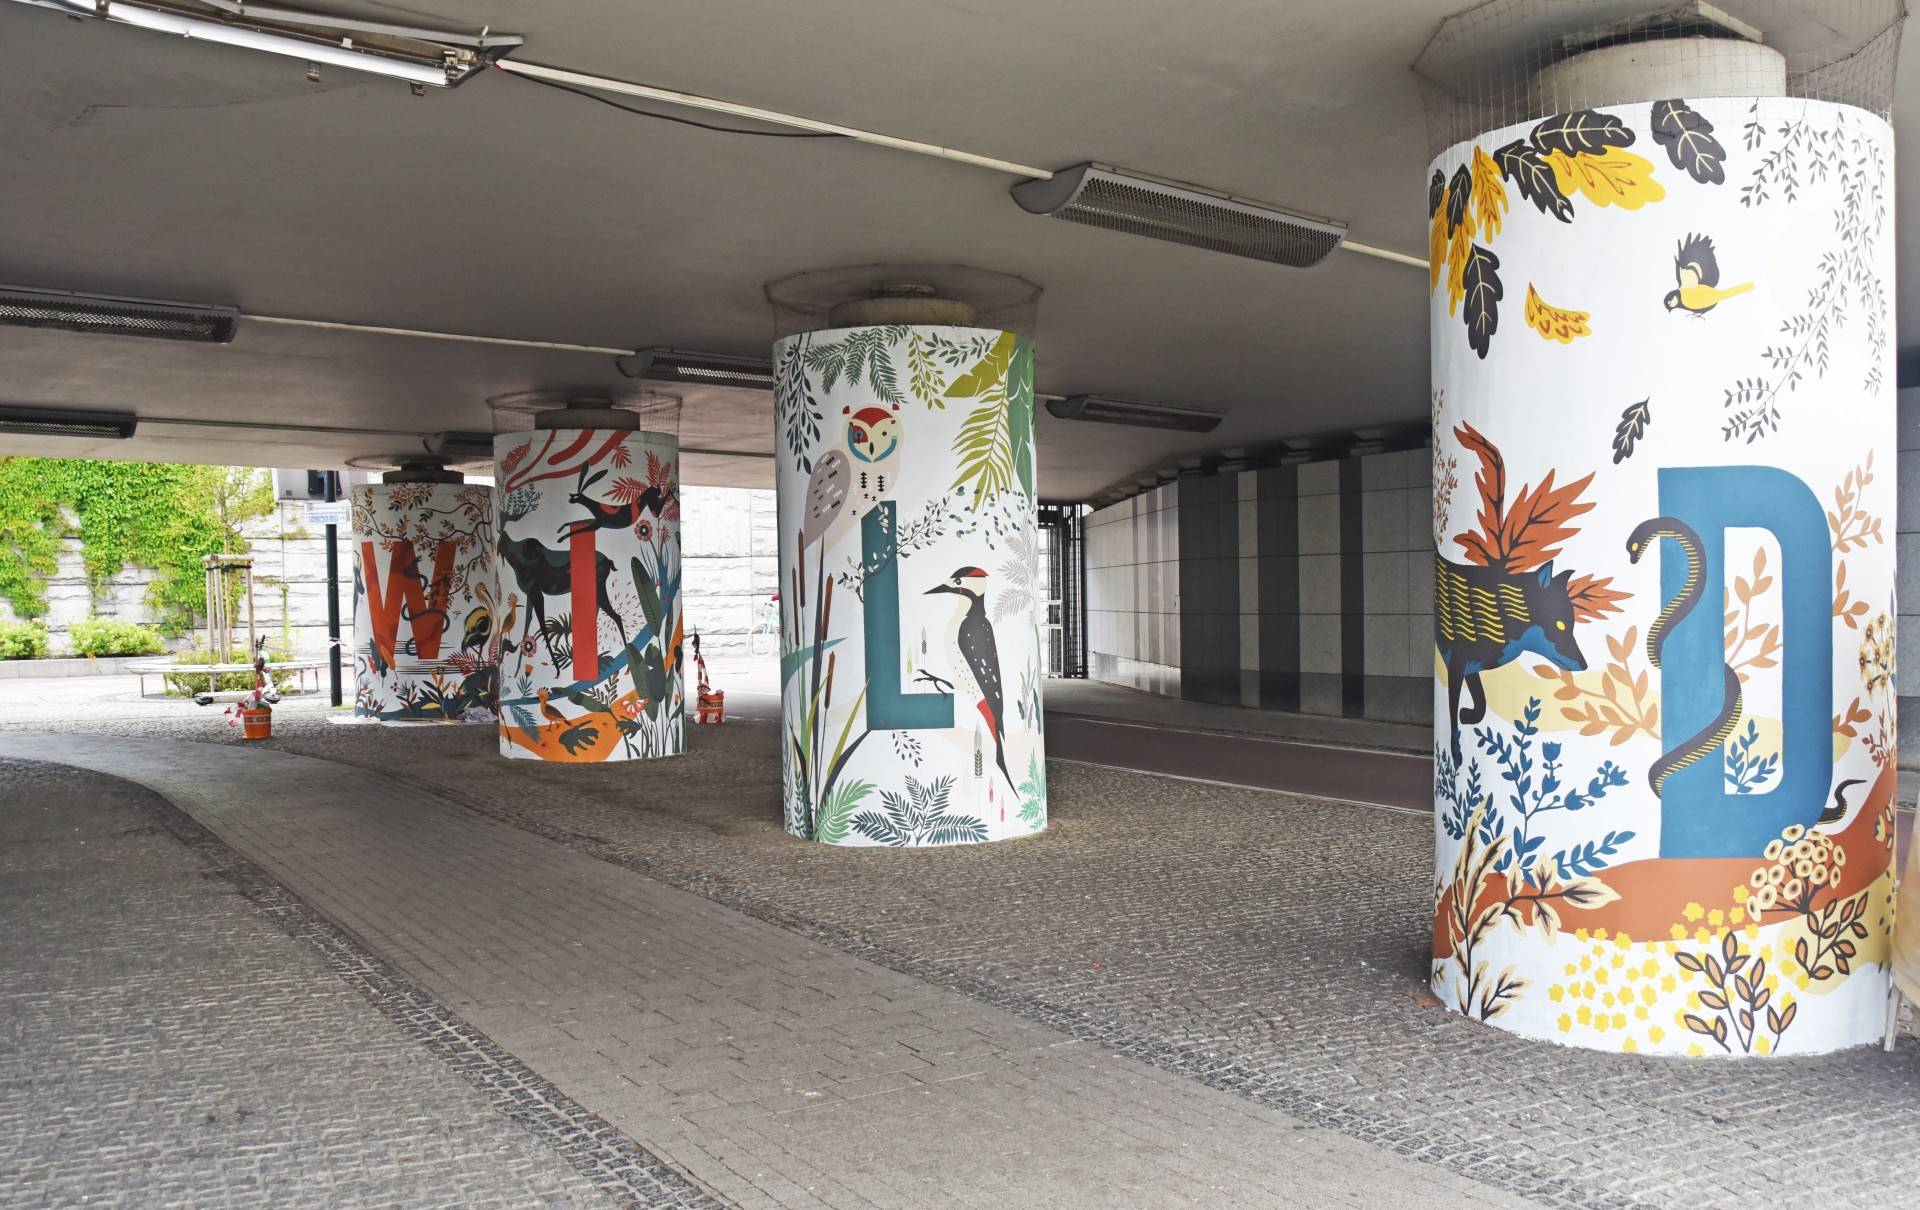 Dzika przyroda na krakowskim "rondzie murali". Ma skłaniać do refleksji